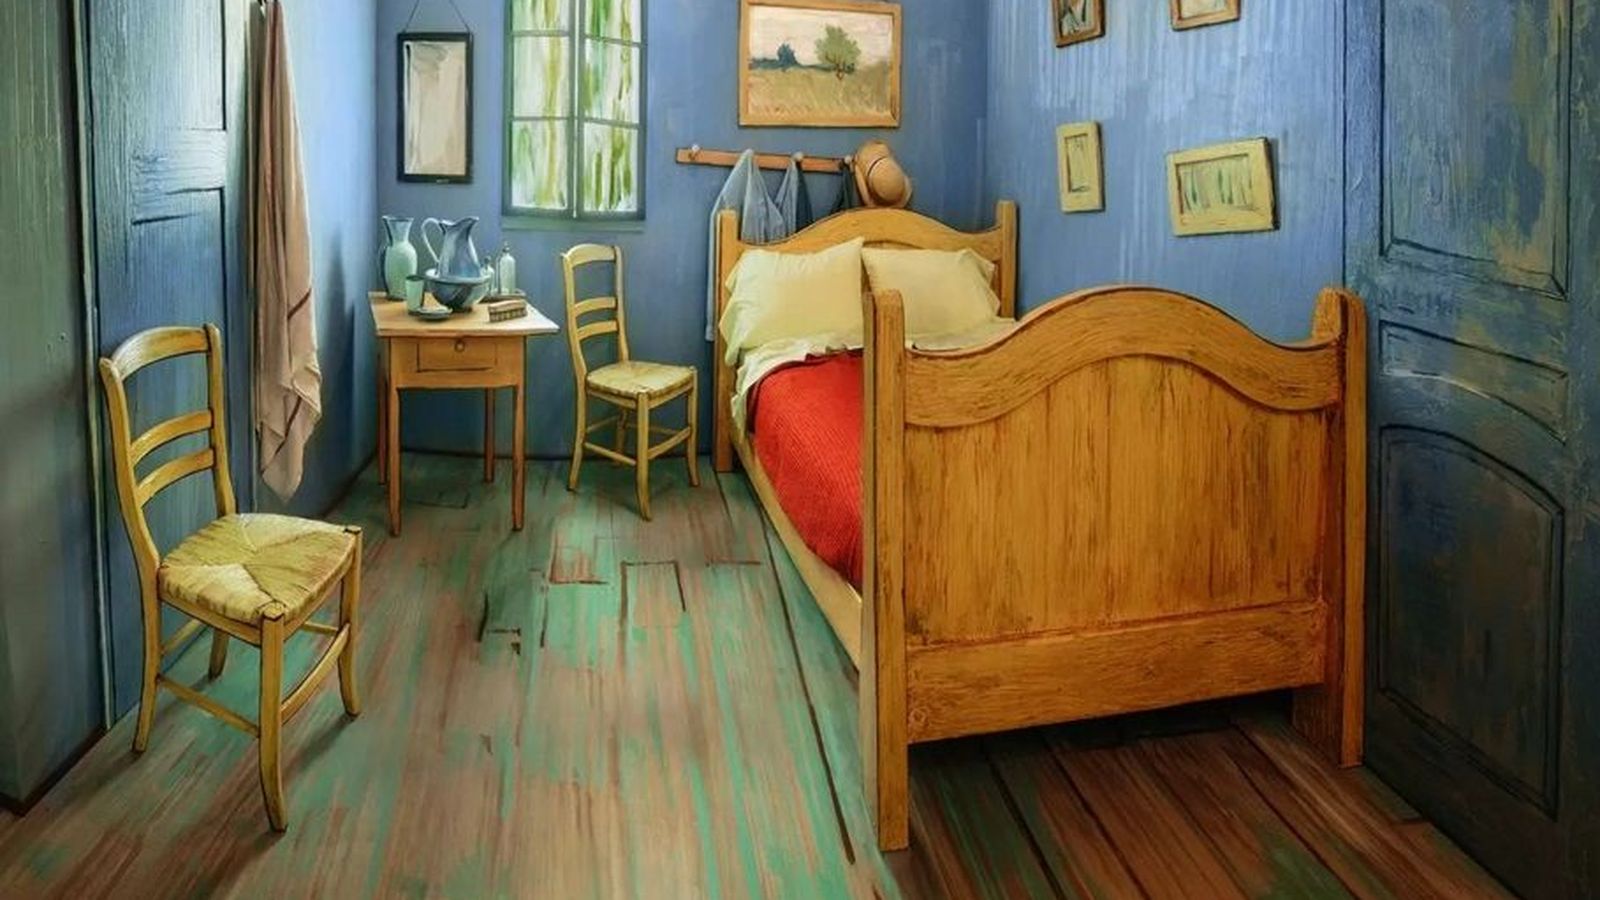 Foto: Esta es la habitación donde sentirse como Van Gogh es posible por 9 euros (AirBnB/Art Institute of Chicago)